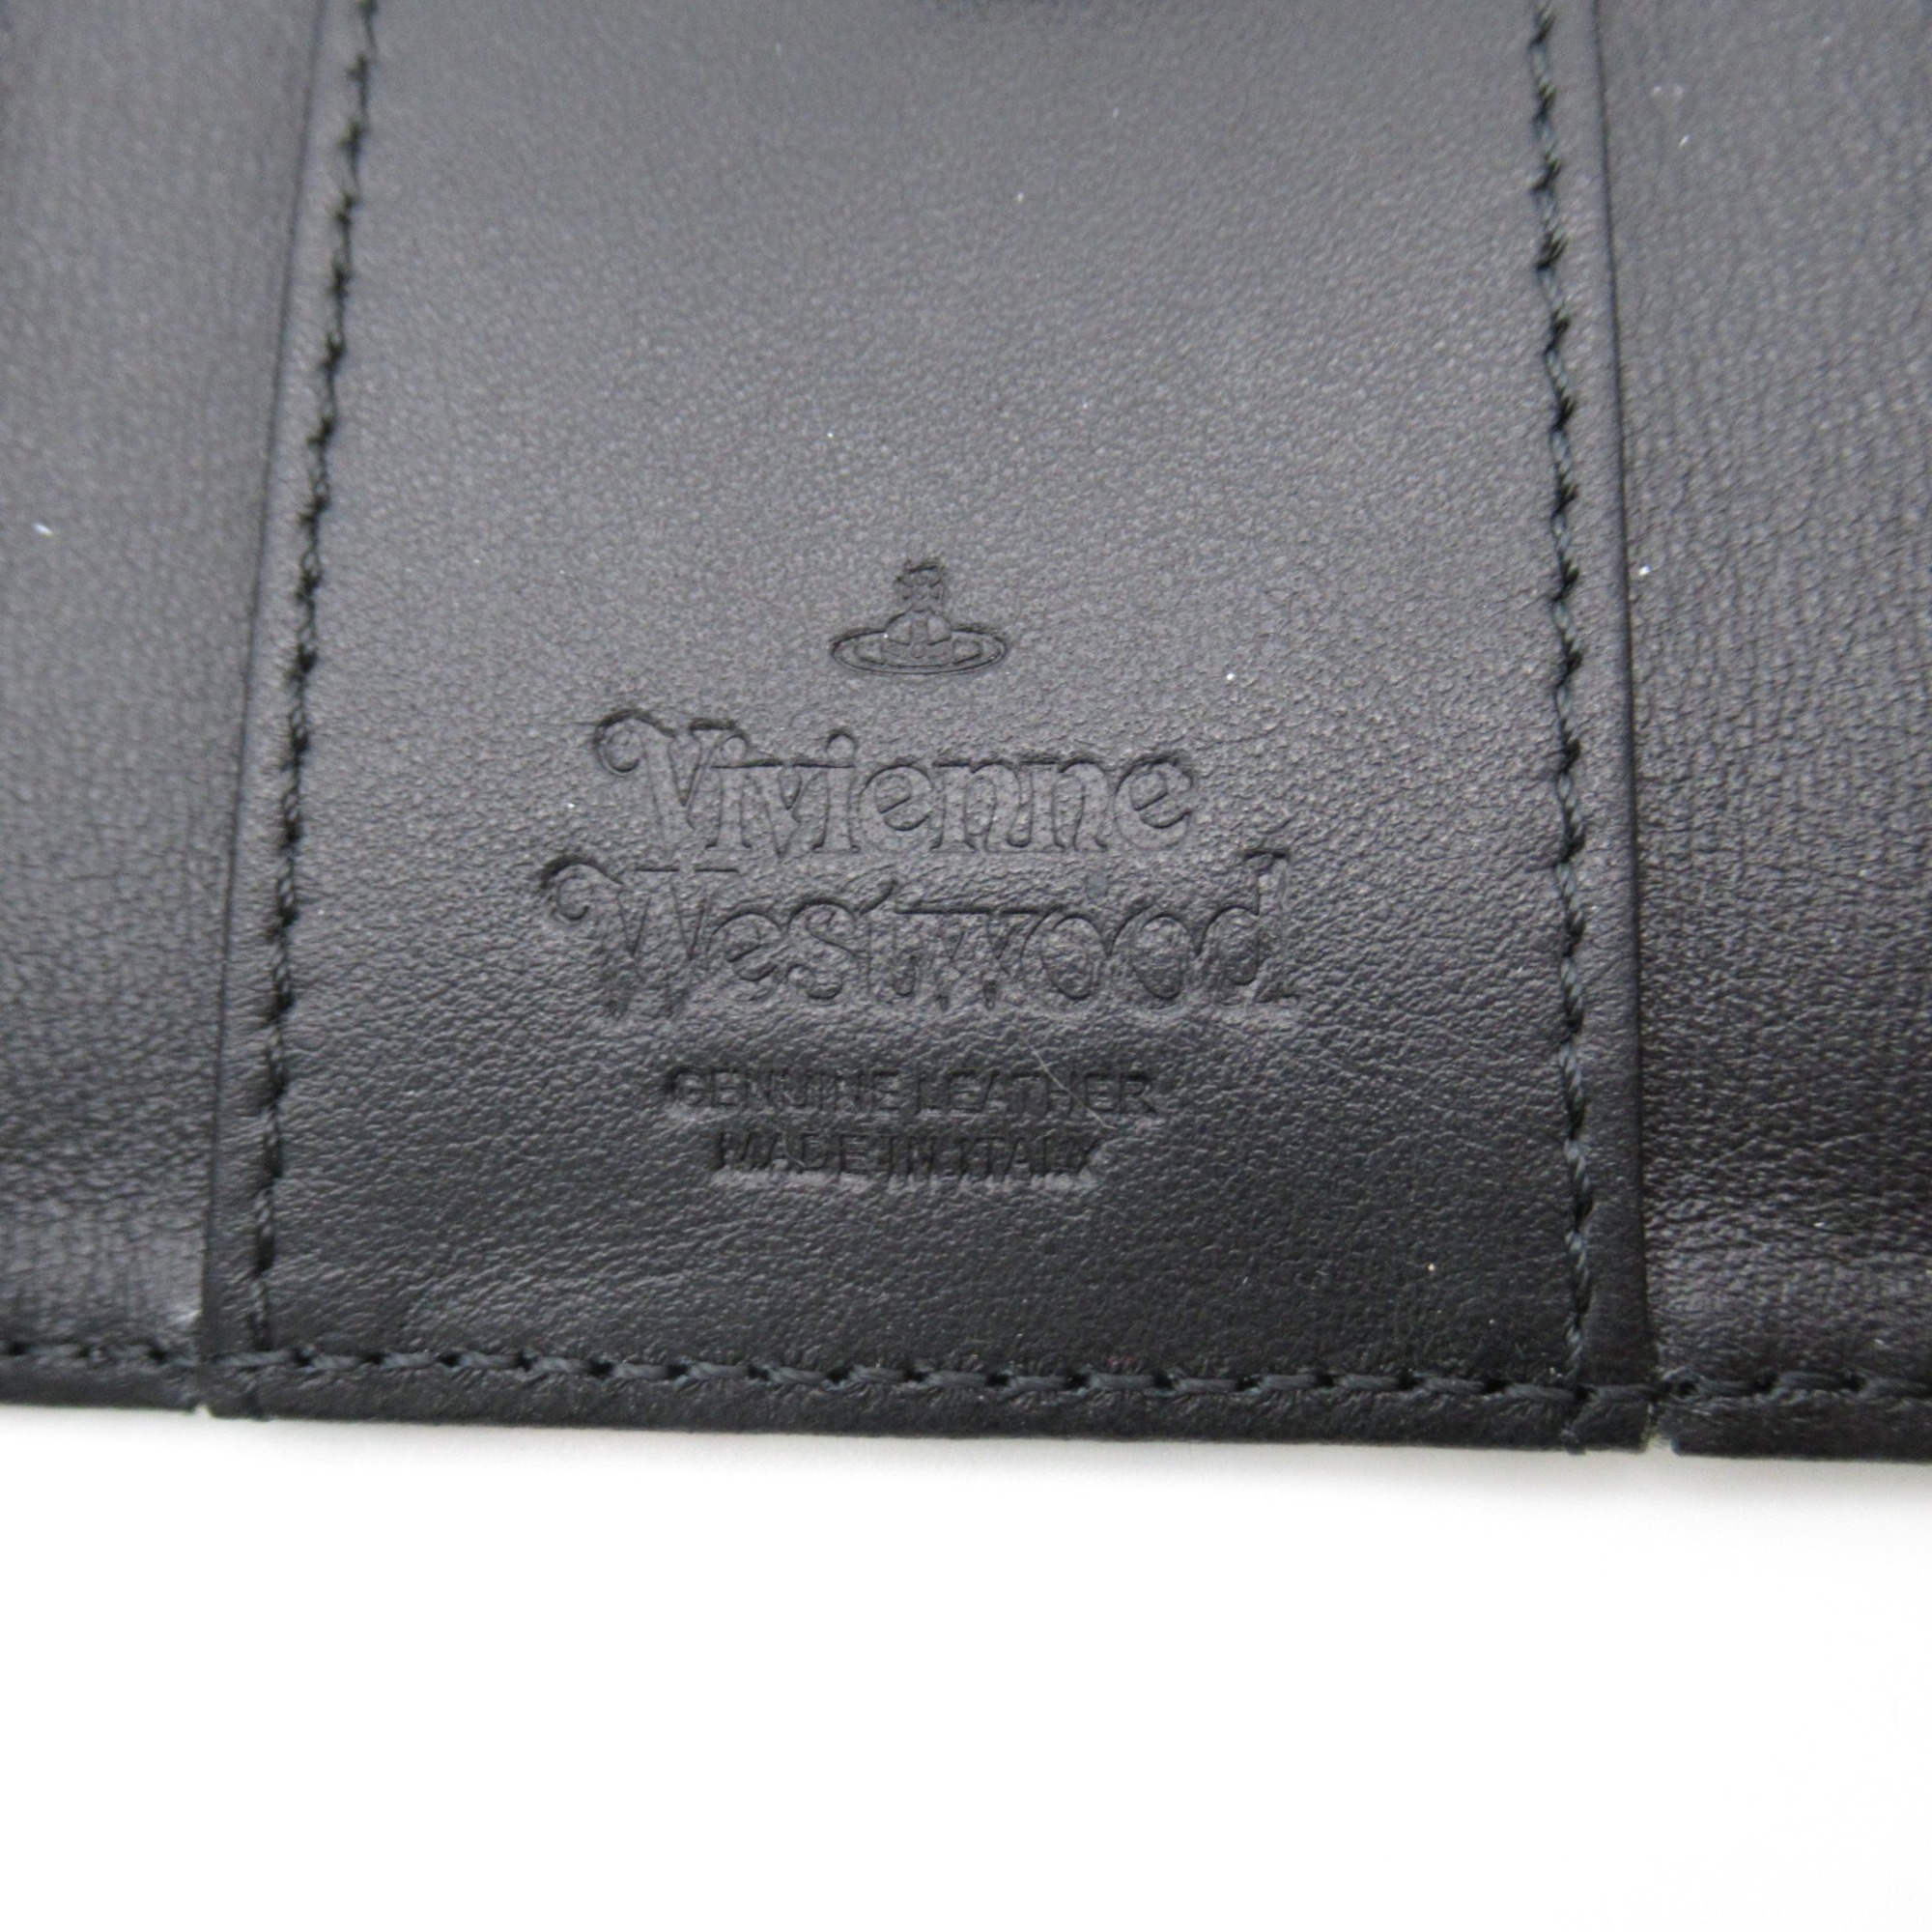 Vivienne Westwood 4 hooks key holder White madras check Safiano leather Saffiano print 51020001UL0057O101